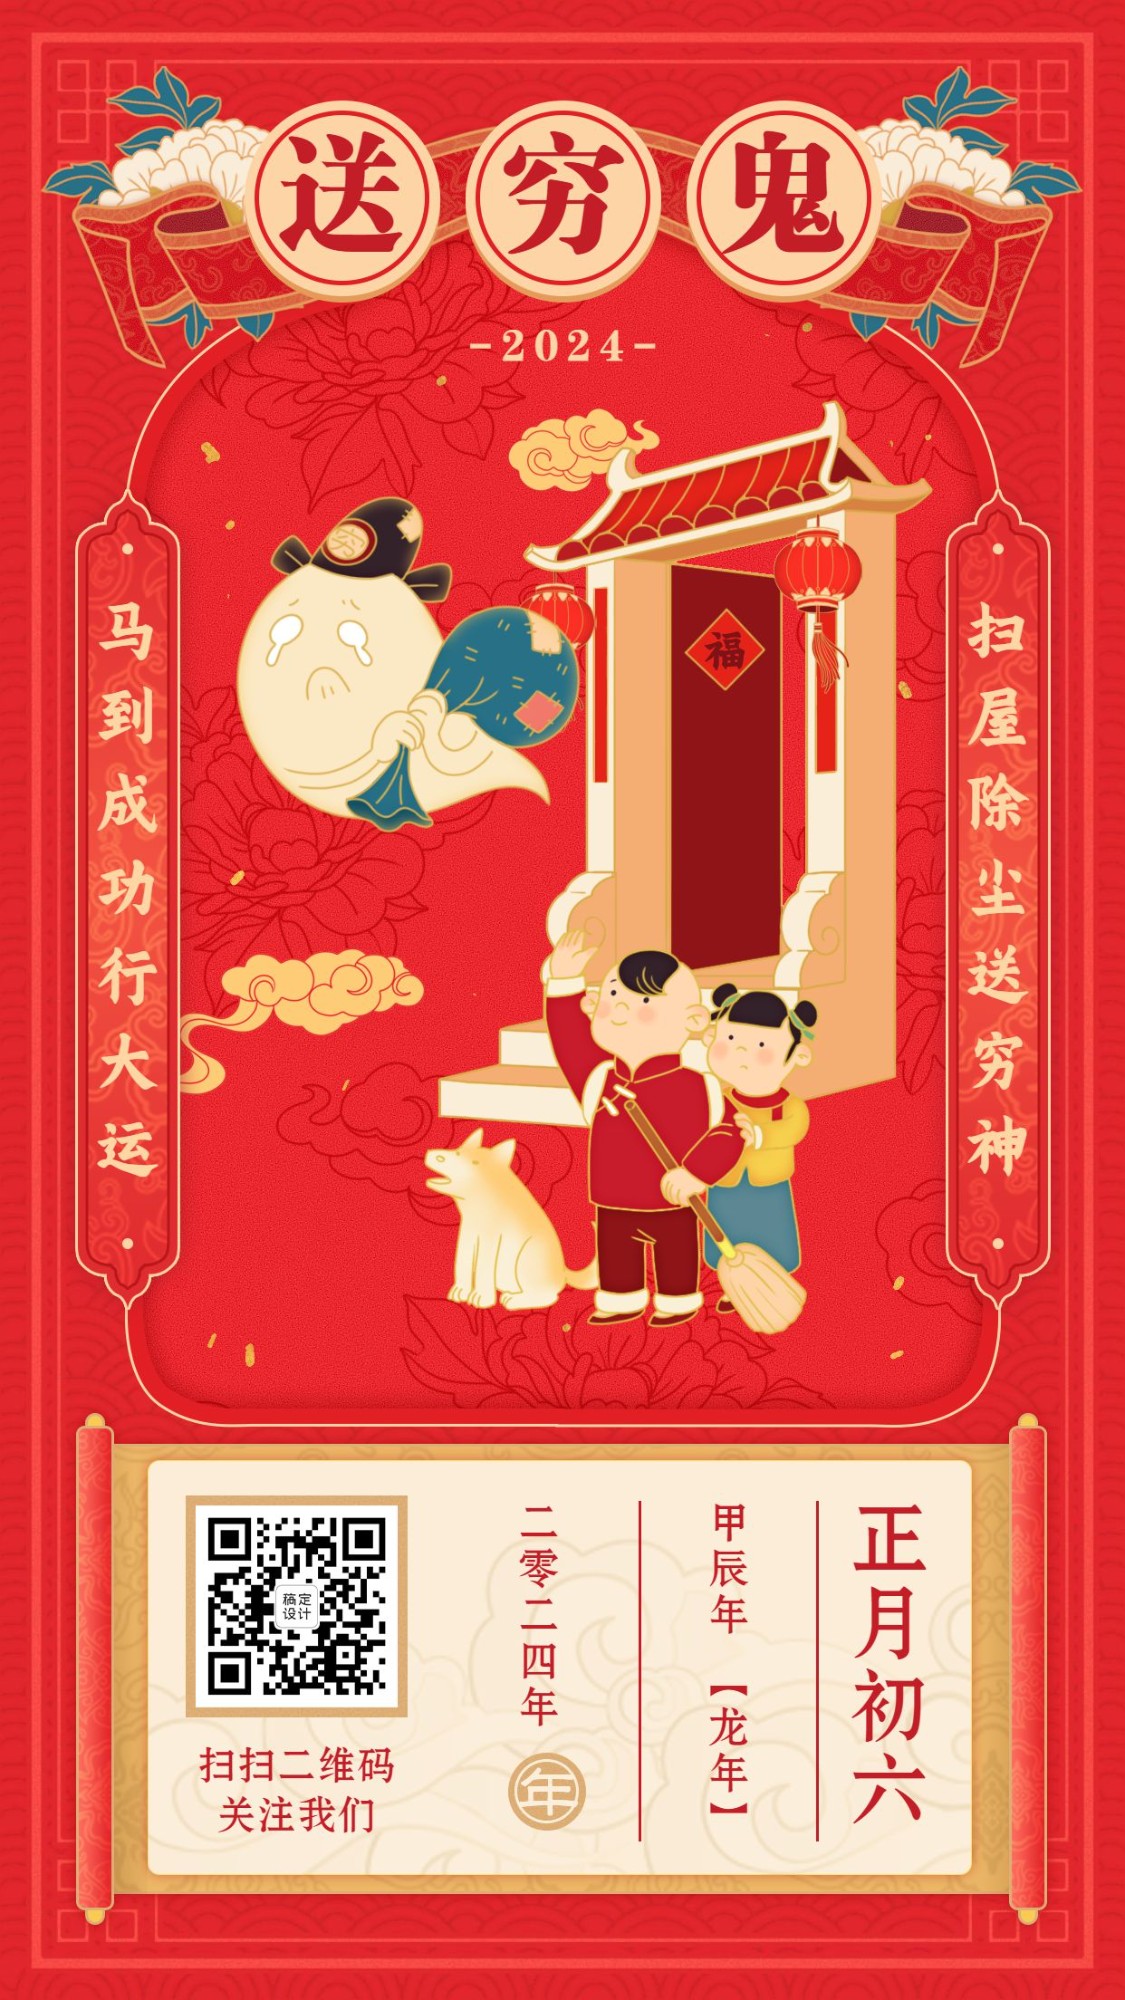 春节祝福年俗海报正月初六送穷鬼预览效果